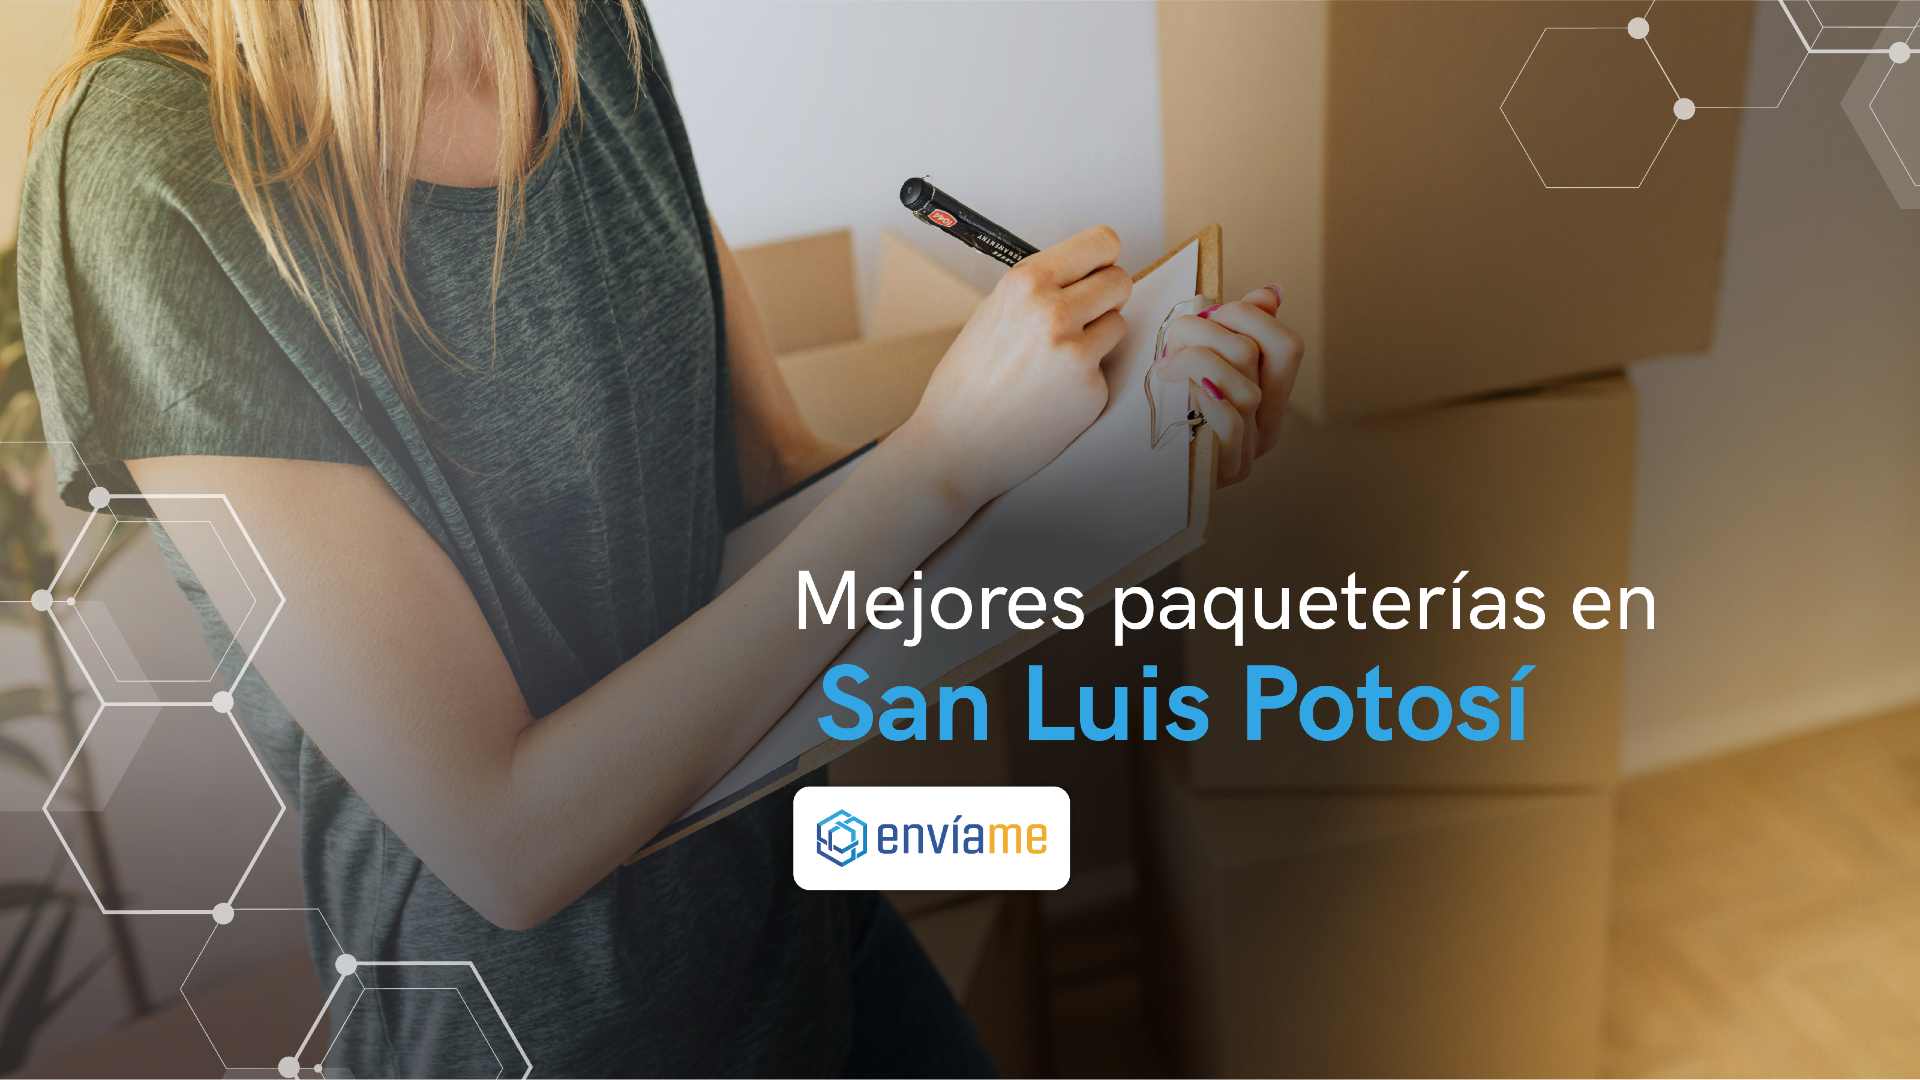 paqueterías San Luís Potosí